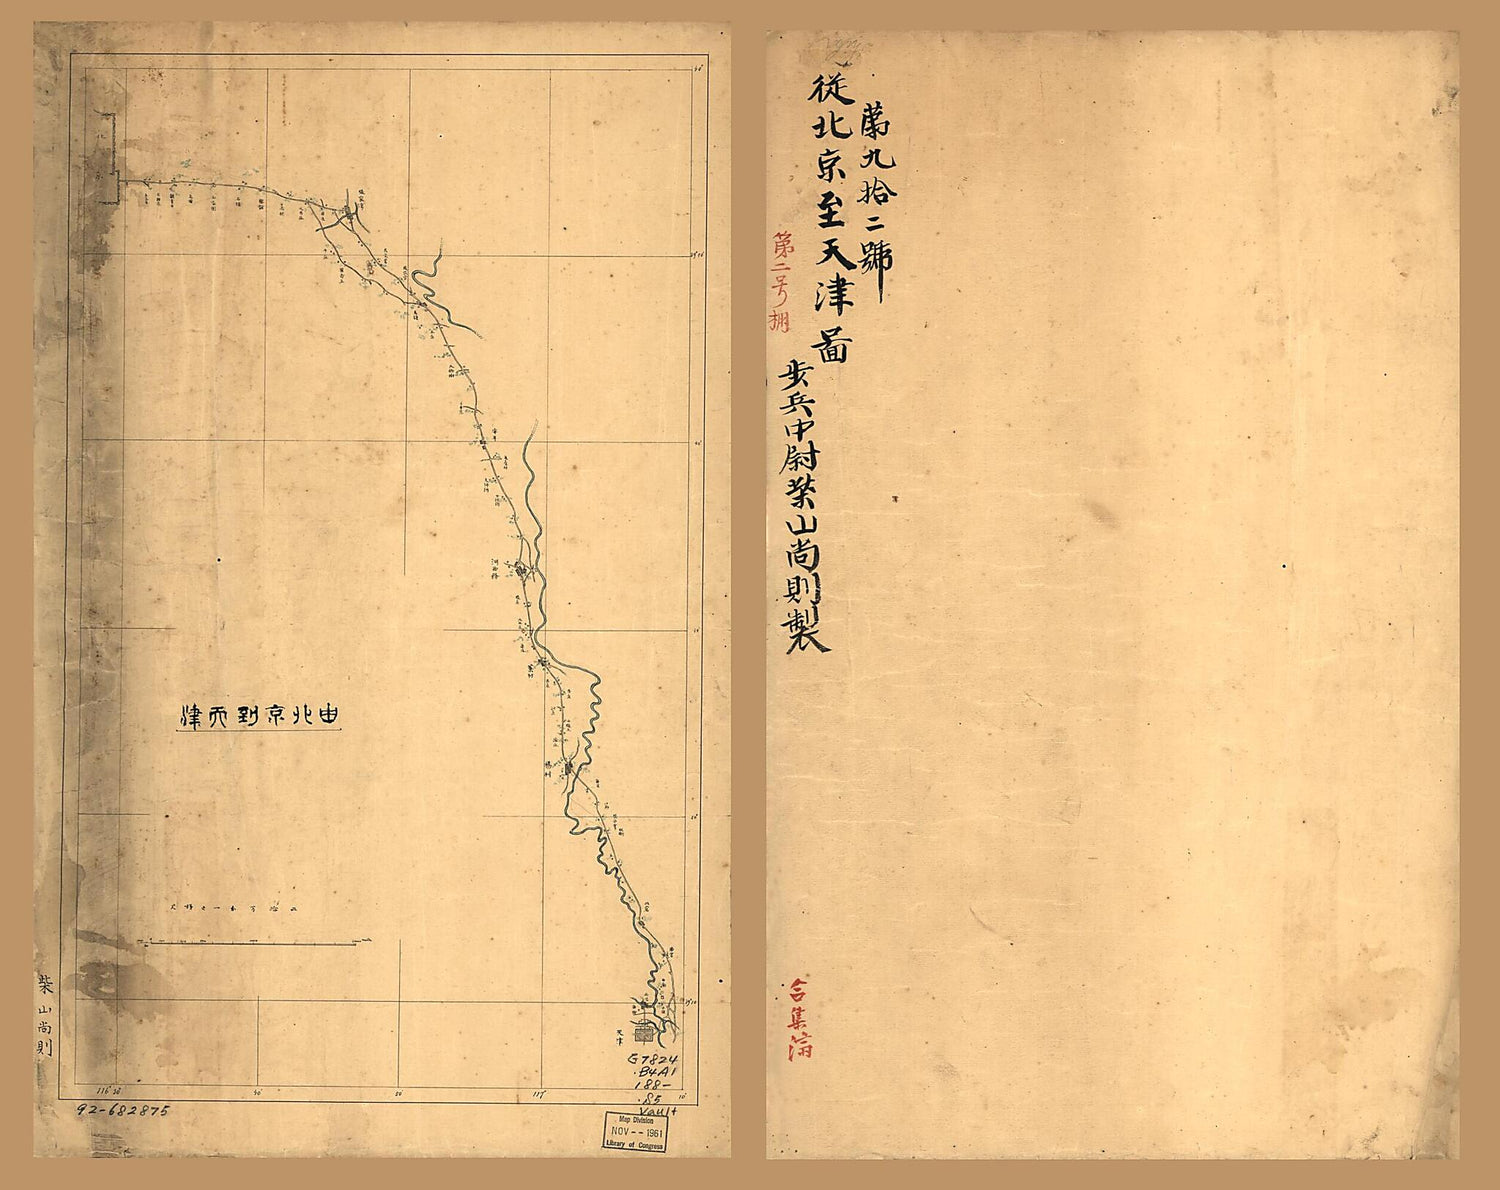 This old map of Pekin Yori Tenshin Ni Itaru (You Beijing Dao Tianjin; Cong Beijing Zhi Tianjin Tu) from 1880 was created by Hisanori Shibayama in 1880